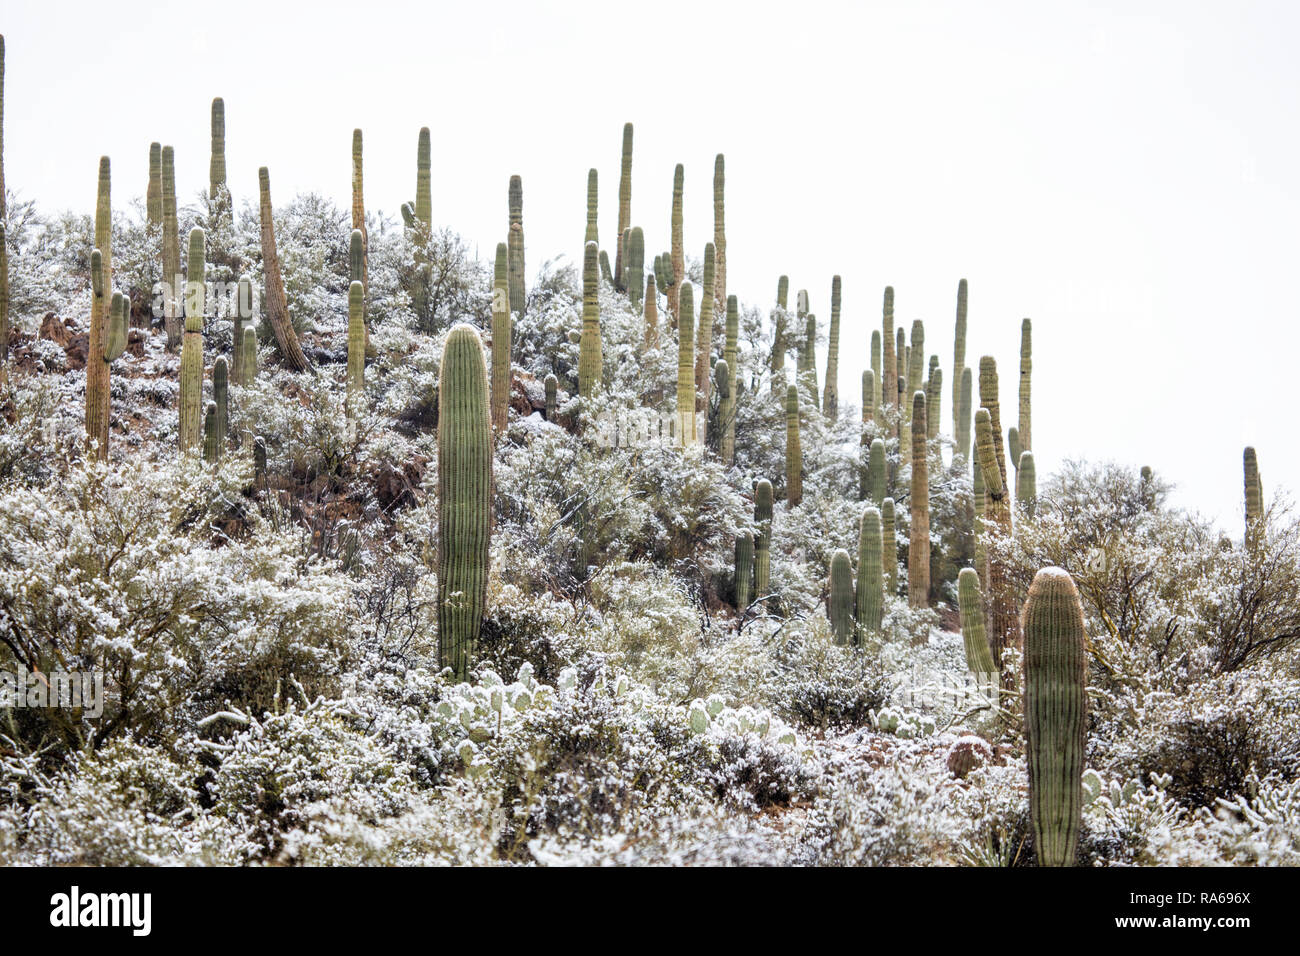 Schnee fällt auf Saguaro Kakteen in der Wüste bei Bumble Bee, Arizona, USA Stockfoto